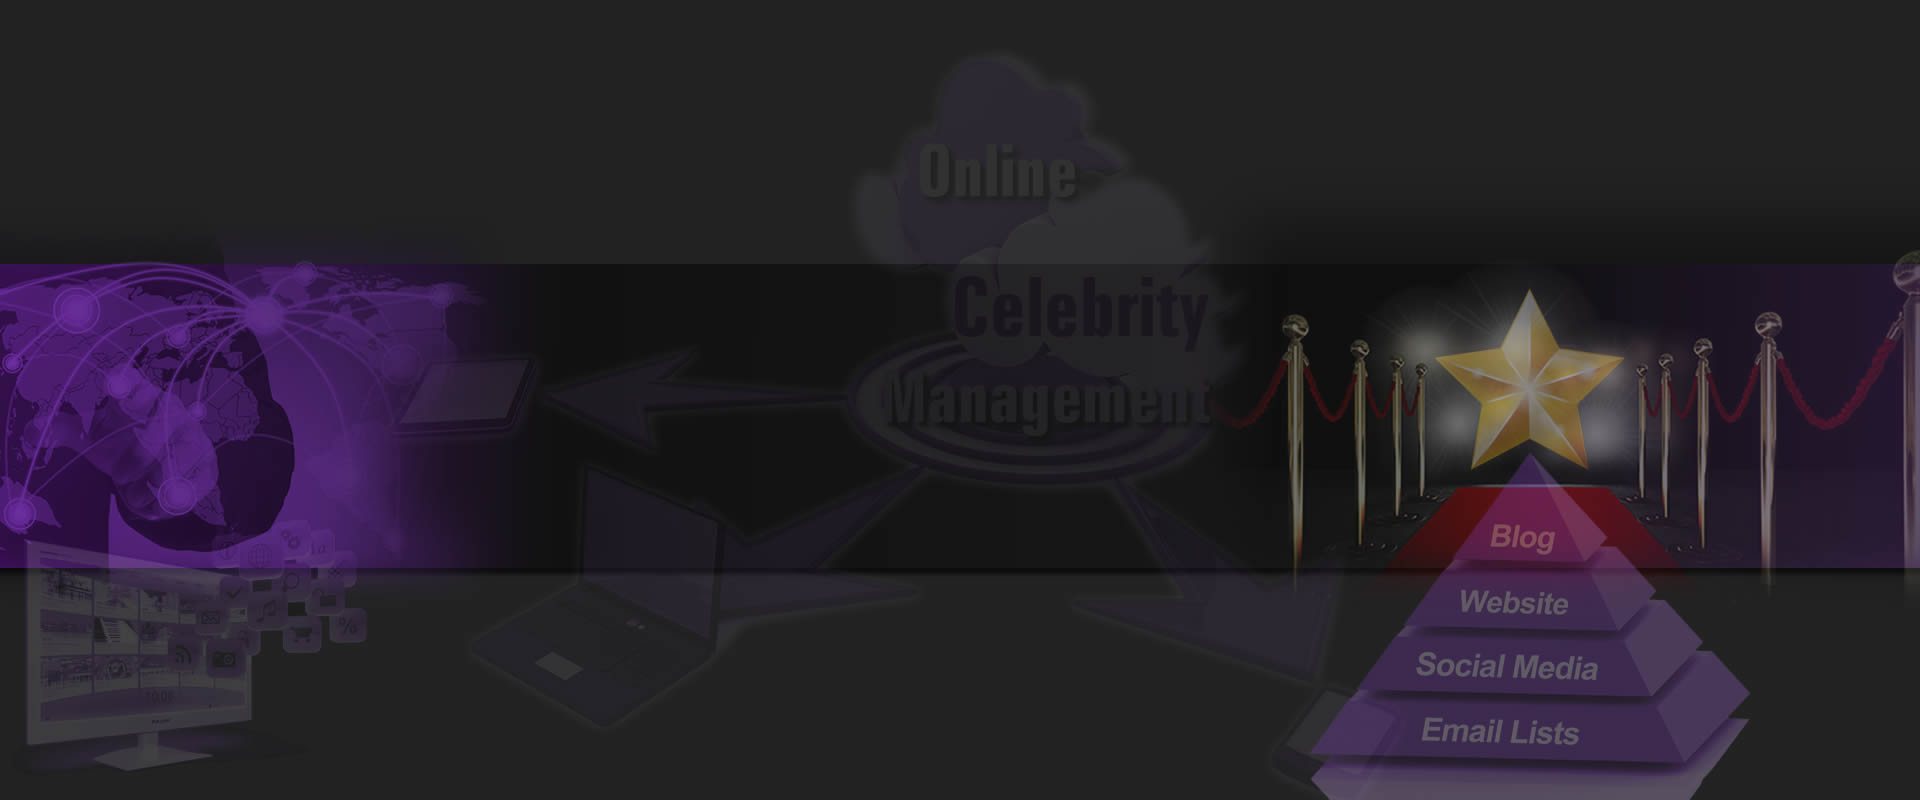 Online Celebrity Management